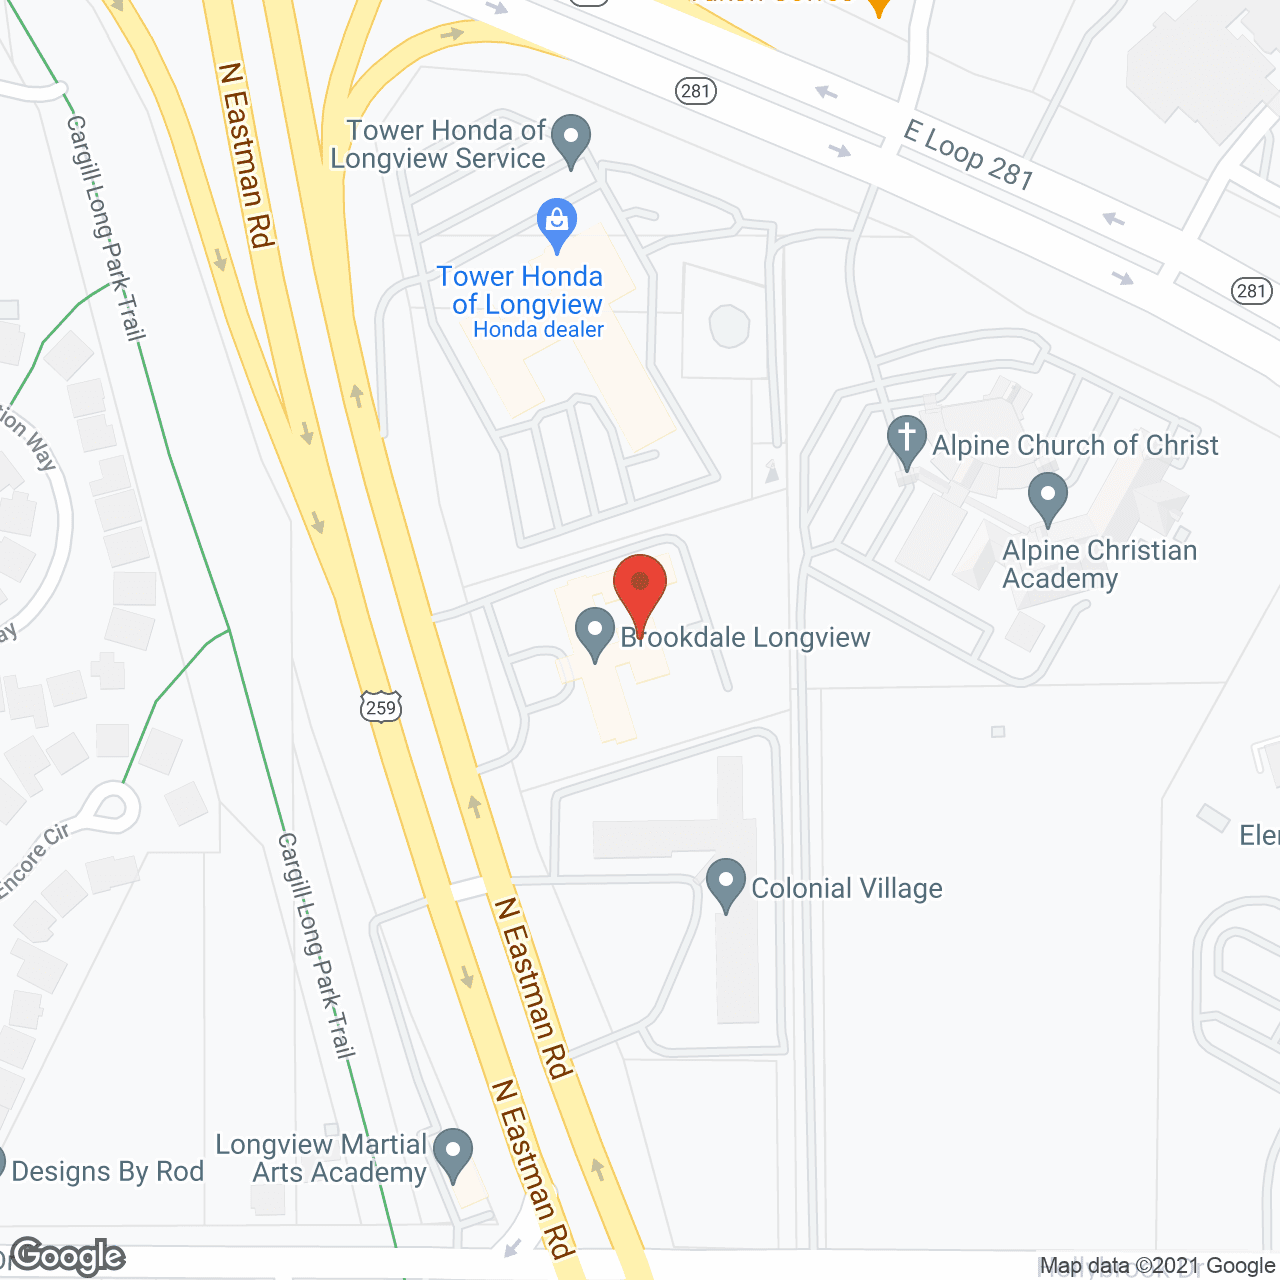 Brookdale Longview in google map